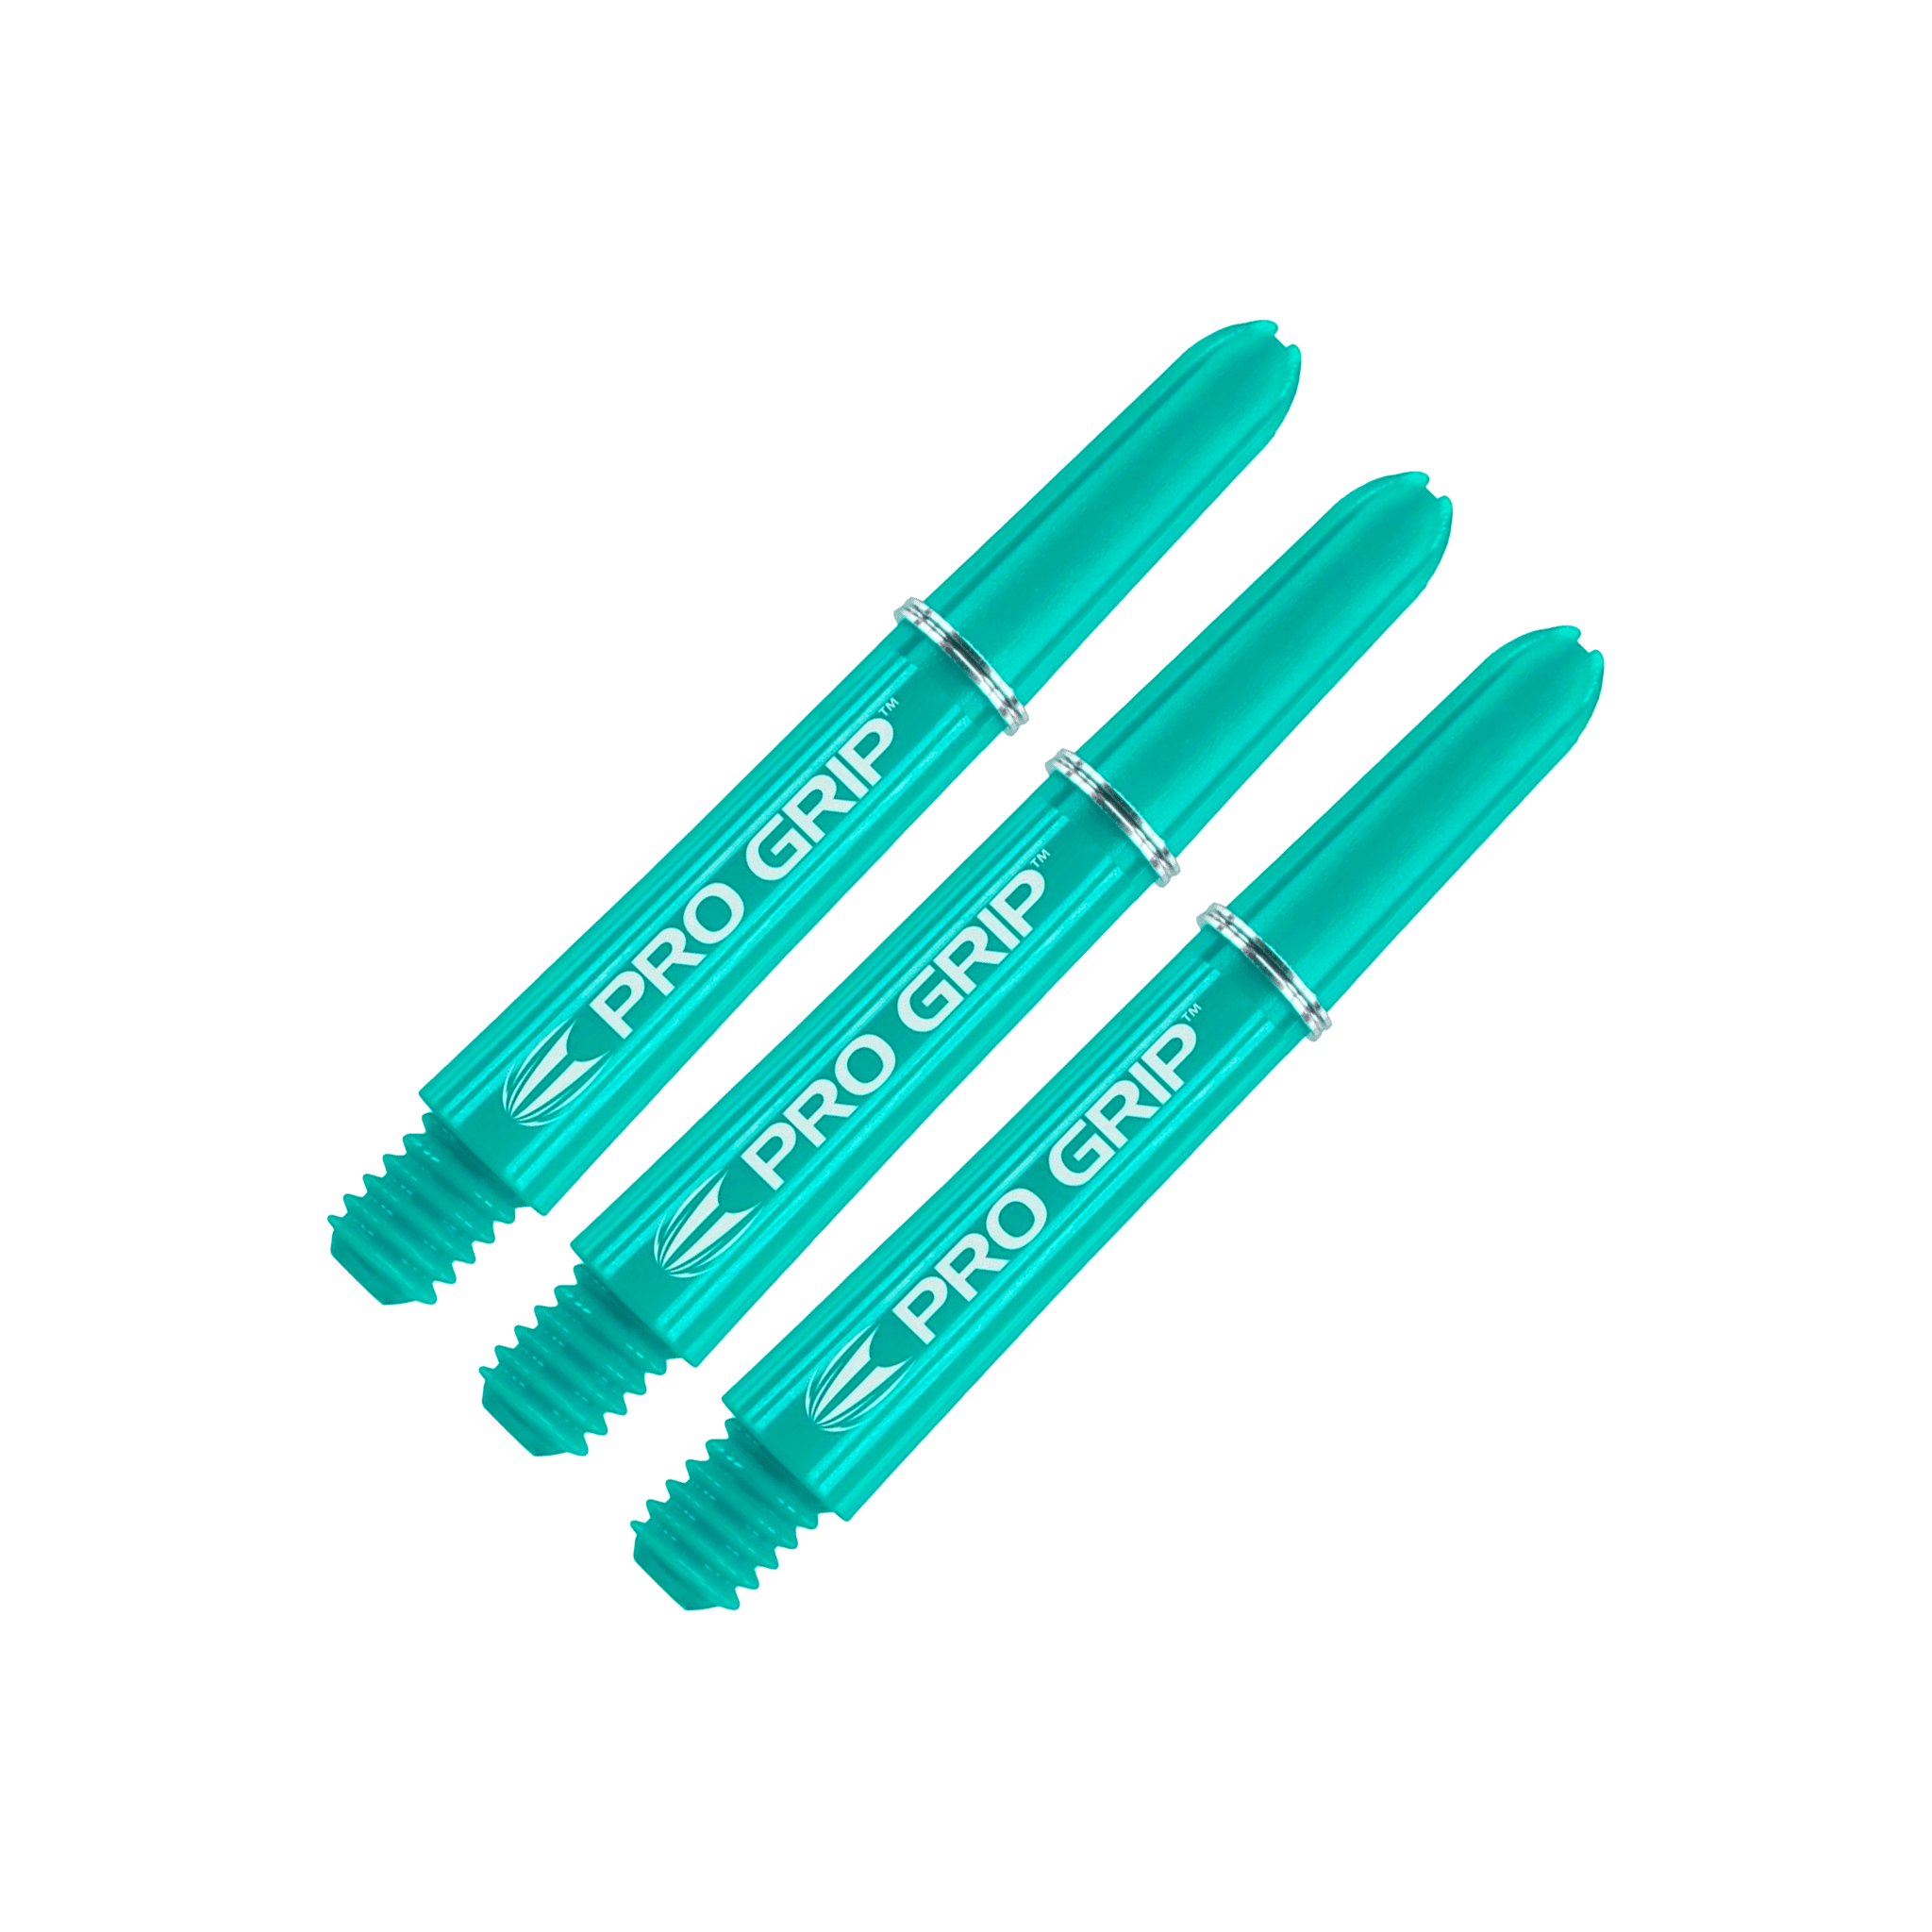 Target Pro Grip Multi Pack - Nylon Dart Shafts (3 Sets) Aqua / Short (34mm) Shafts